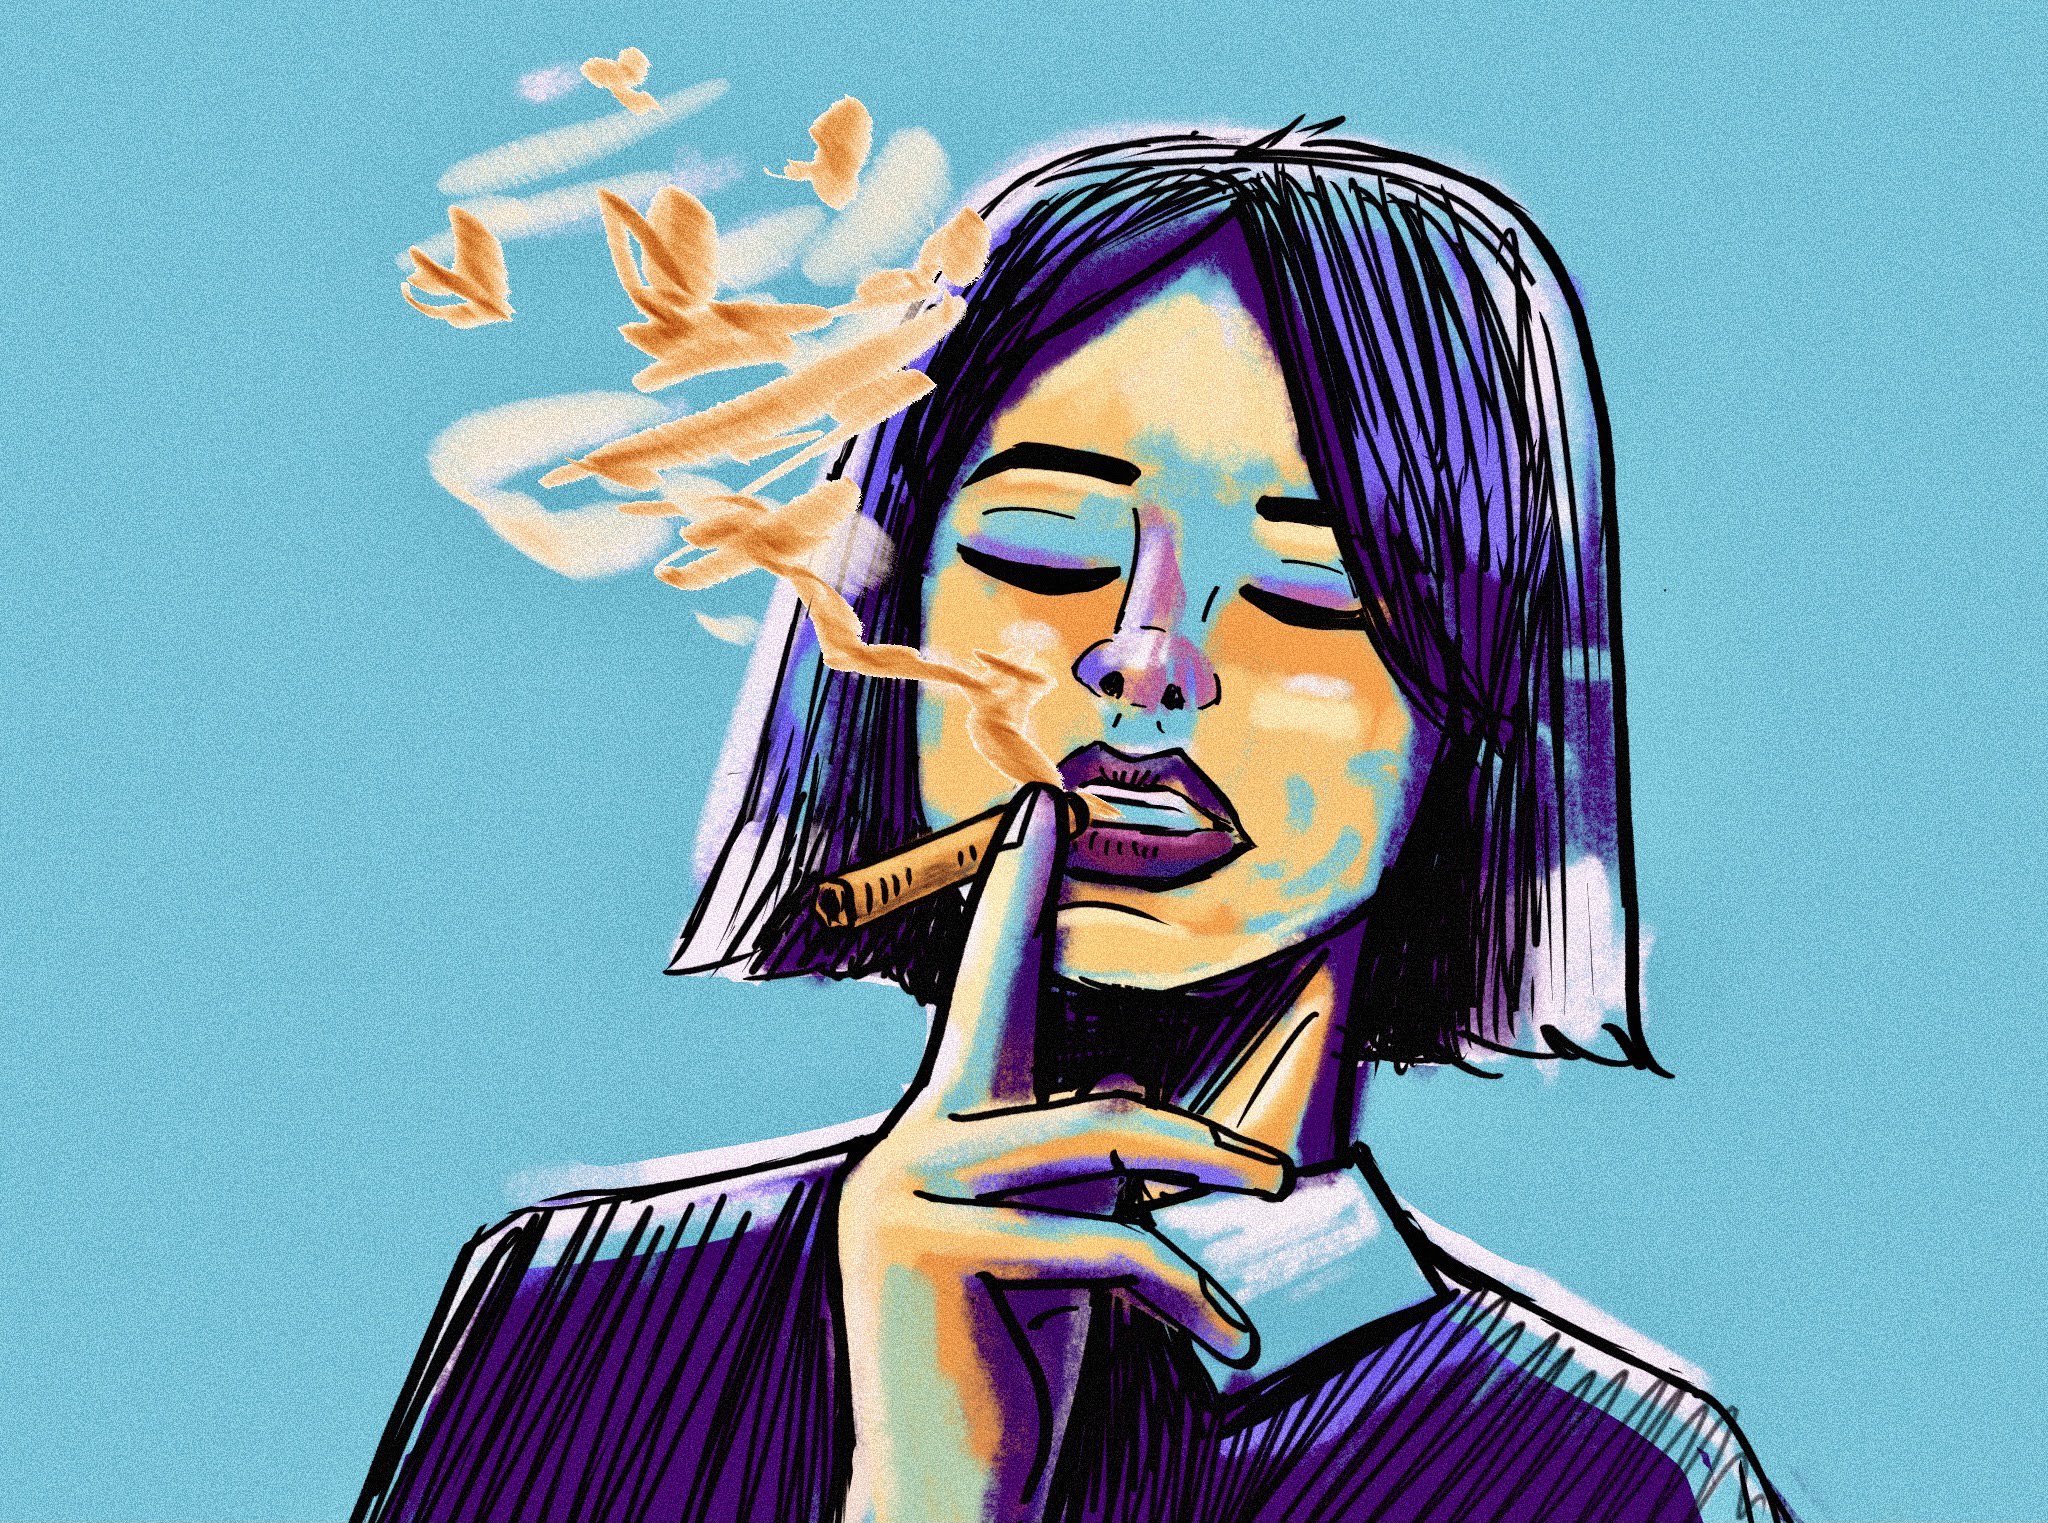 Smoking.jpg